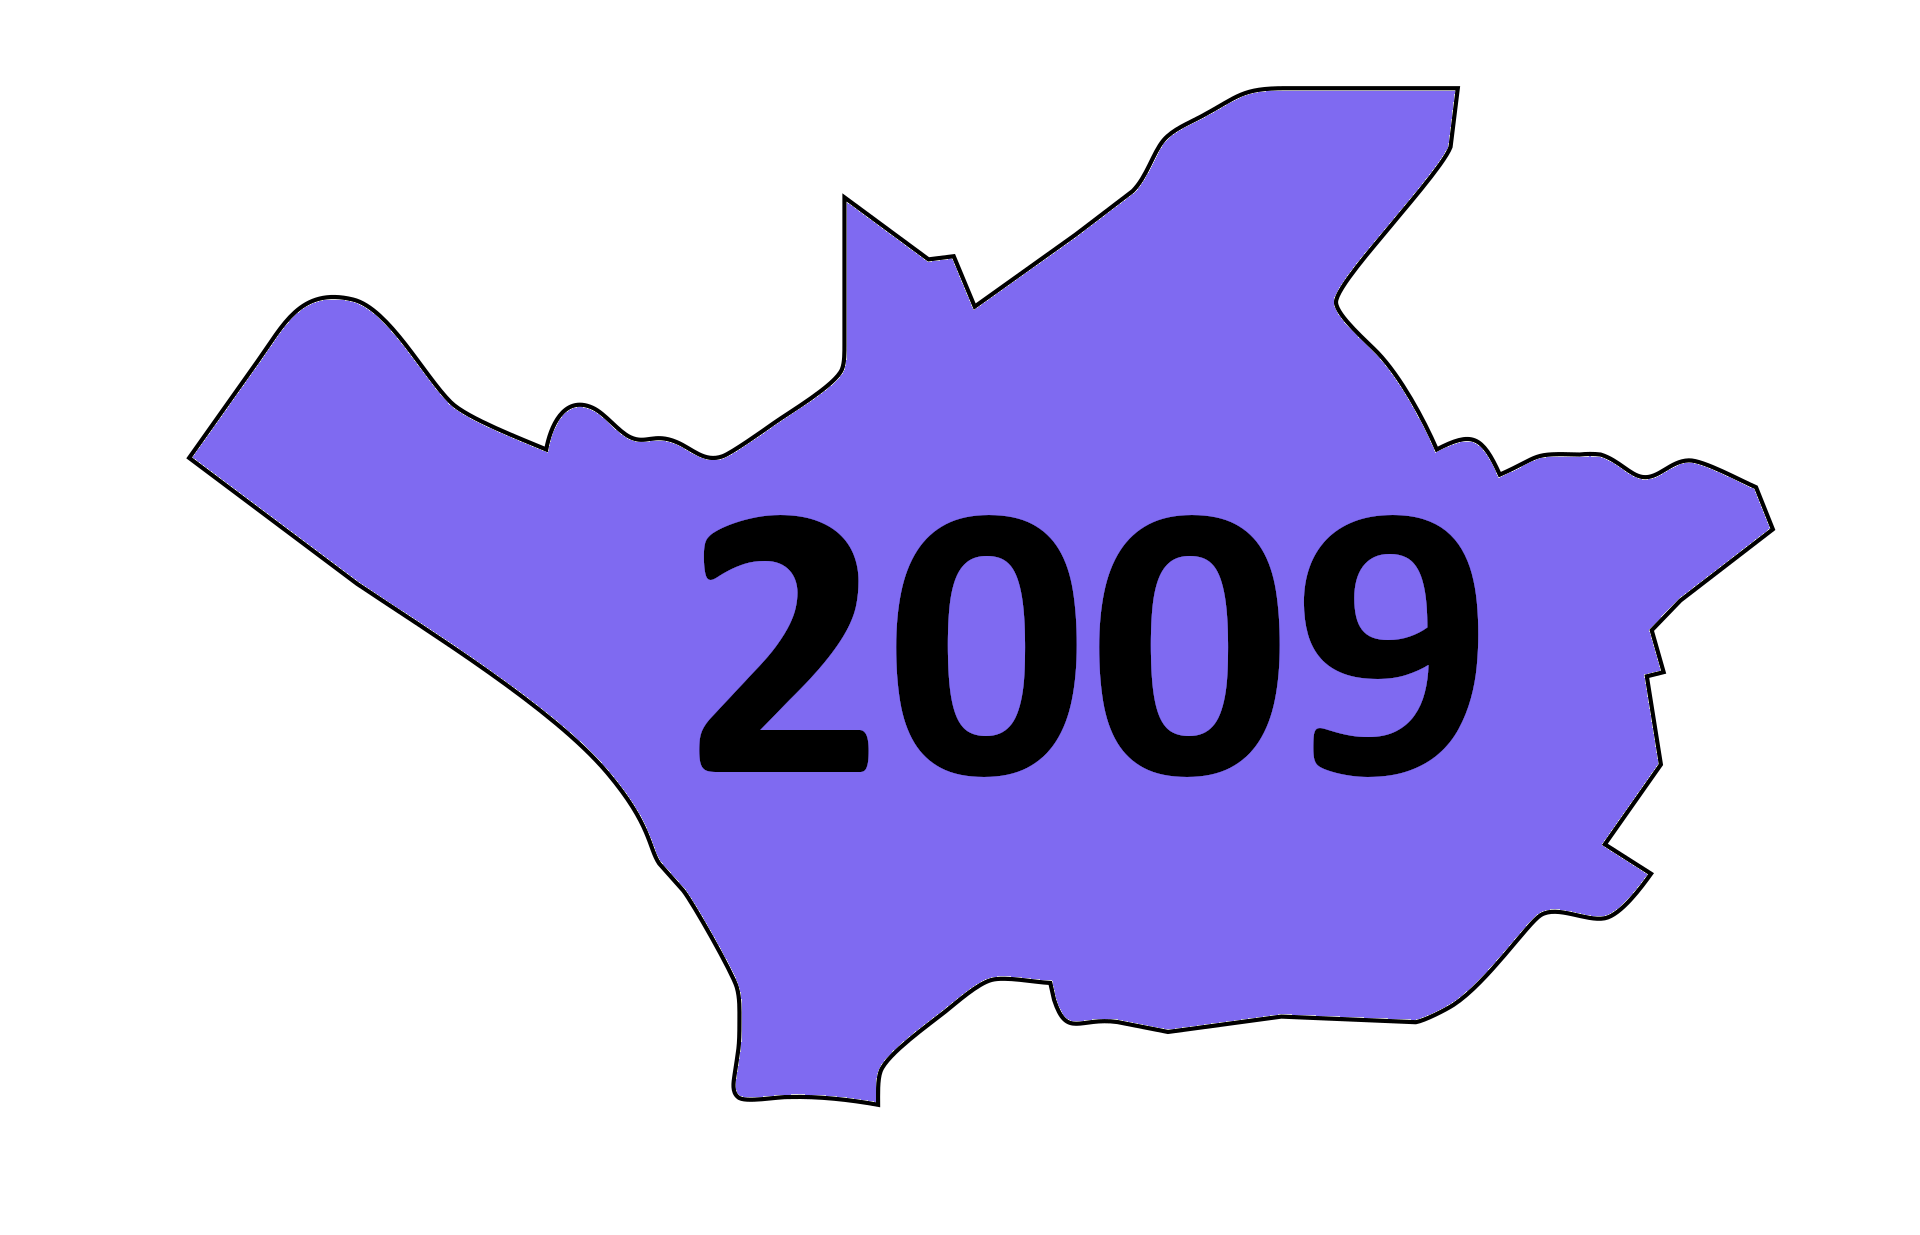 26.05.2009: Europawahl am 07. Juni 2009